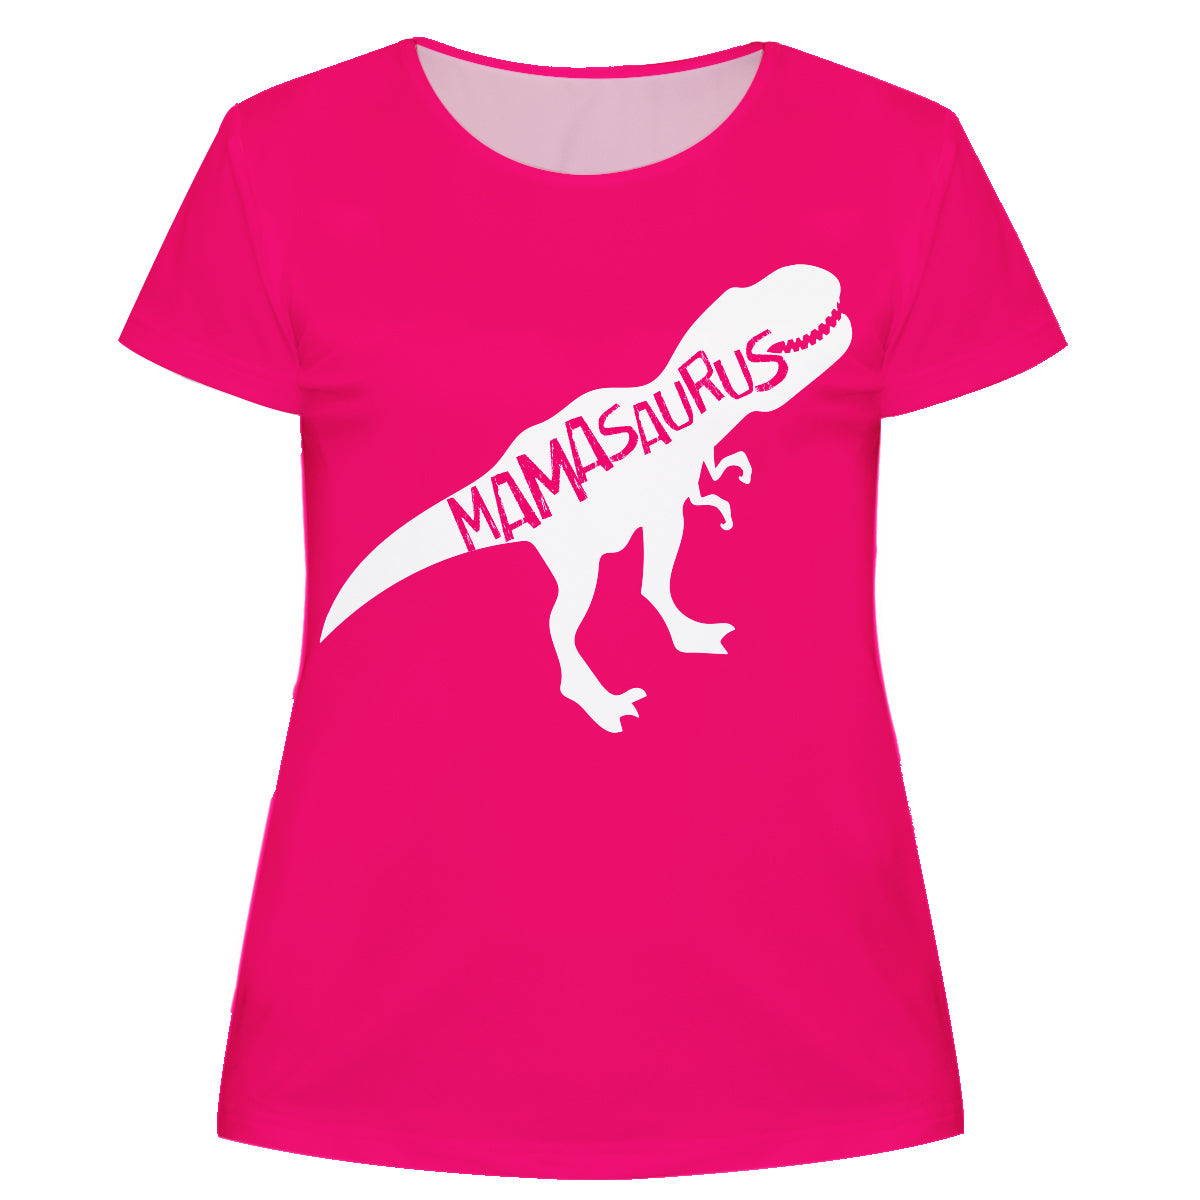 Mamasaurus Hot Pink Short Sleeve Tee Shirt